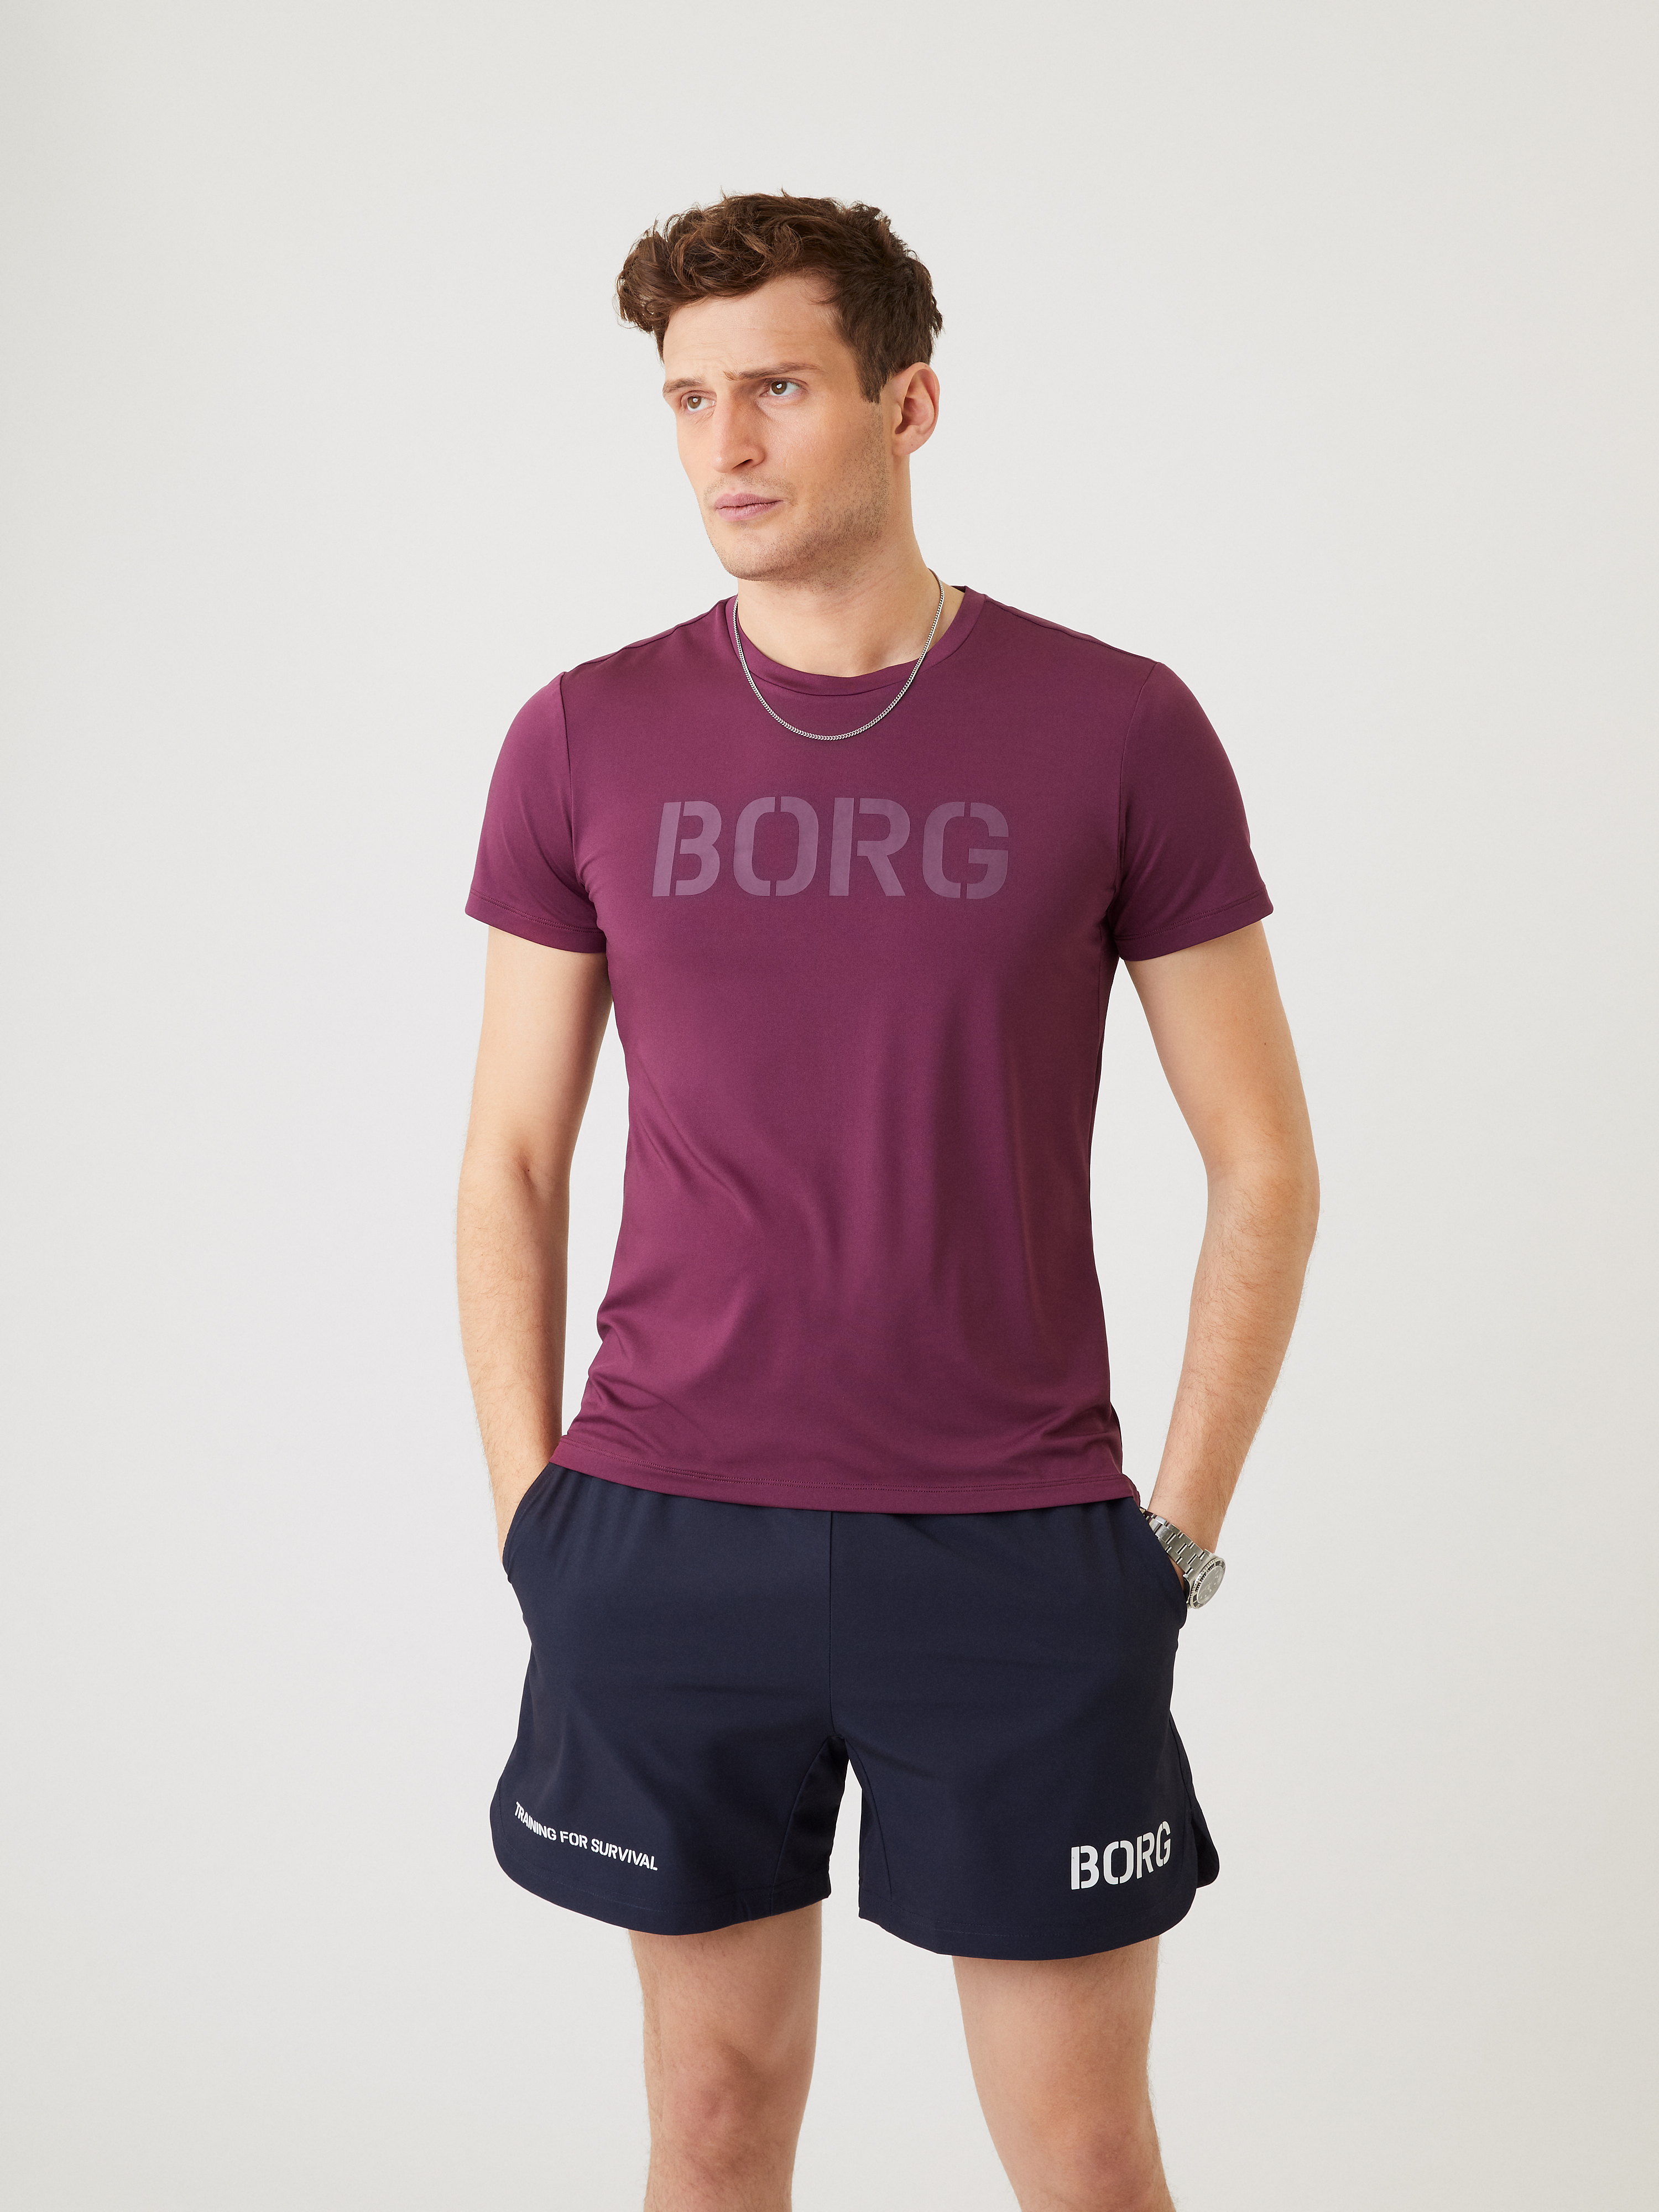 Moda Koszulki Koszulki sportowe Björn Borg Bj\u00f6rn Borg Koszulka sportowa czerwony-srebrny Wydrukowane logo W stylu casual 